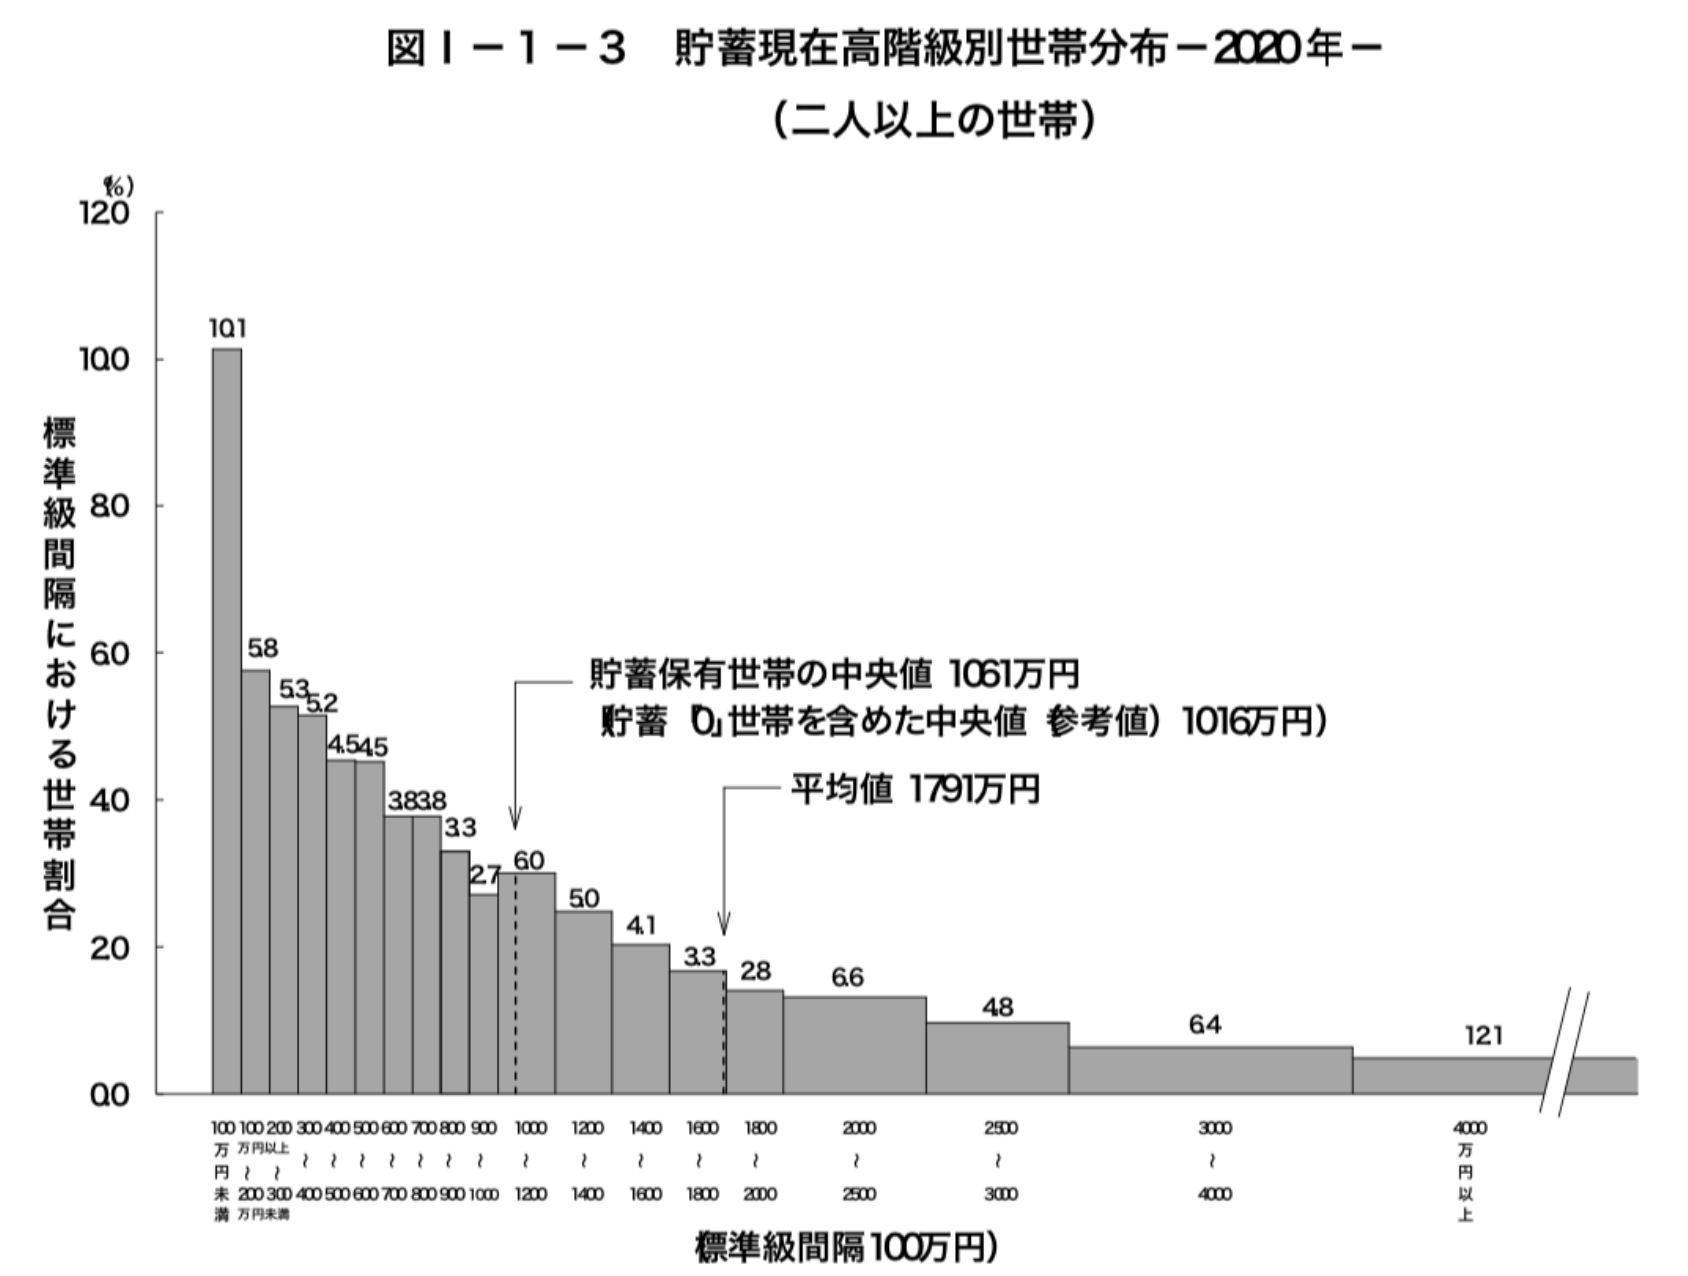 日本の世帯毎の貯蓄額の分布